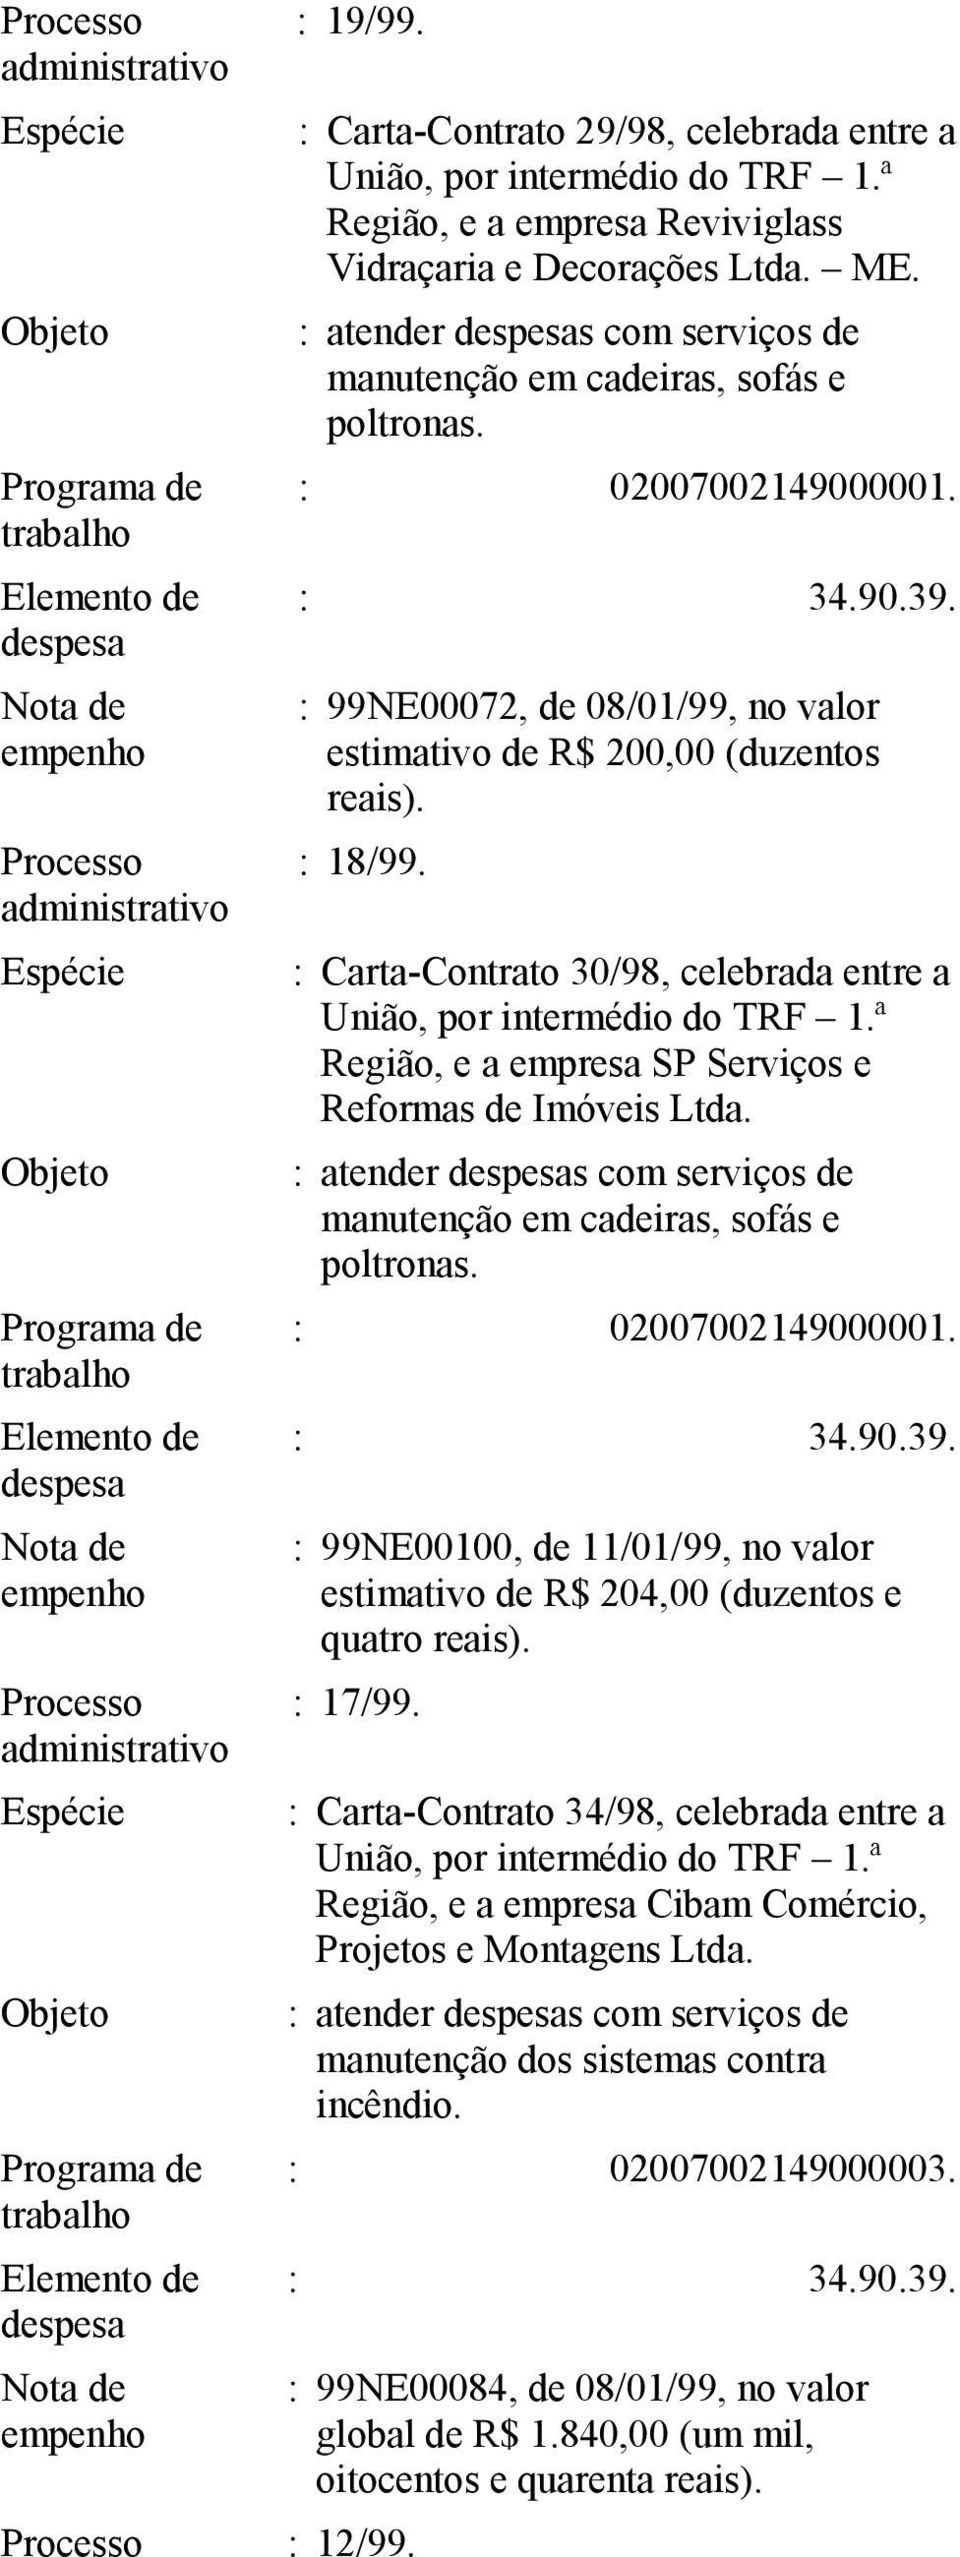 : Carta-Contrato 30/98, celebrada entre a Região, e a empresa SP Serviços e Reformas de Imóveis : atender s com serviços de manutenção em cadeiras, sofás e poltronas.